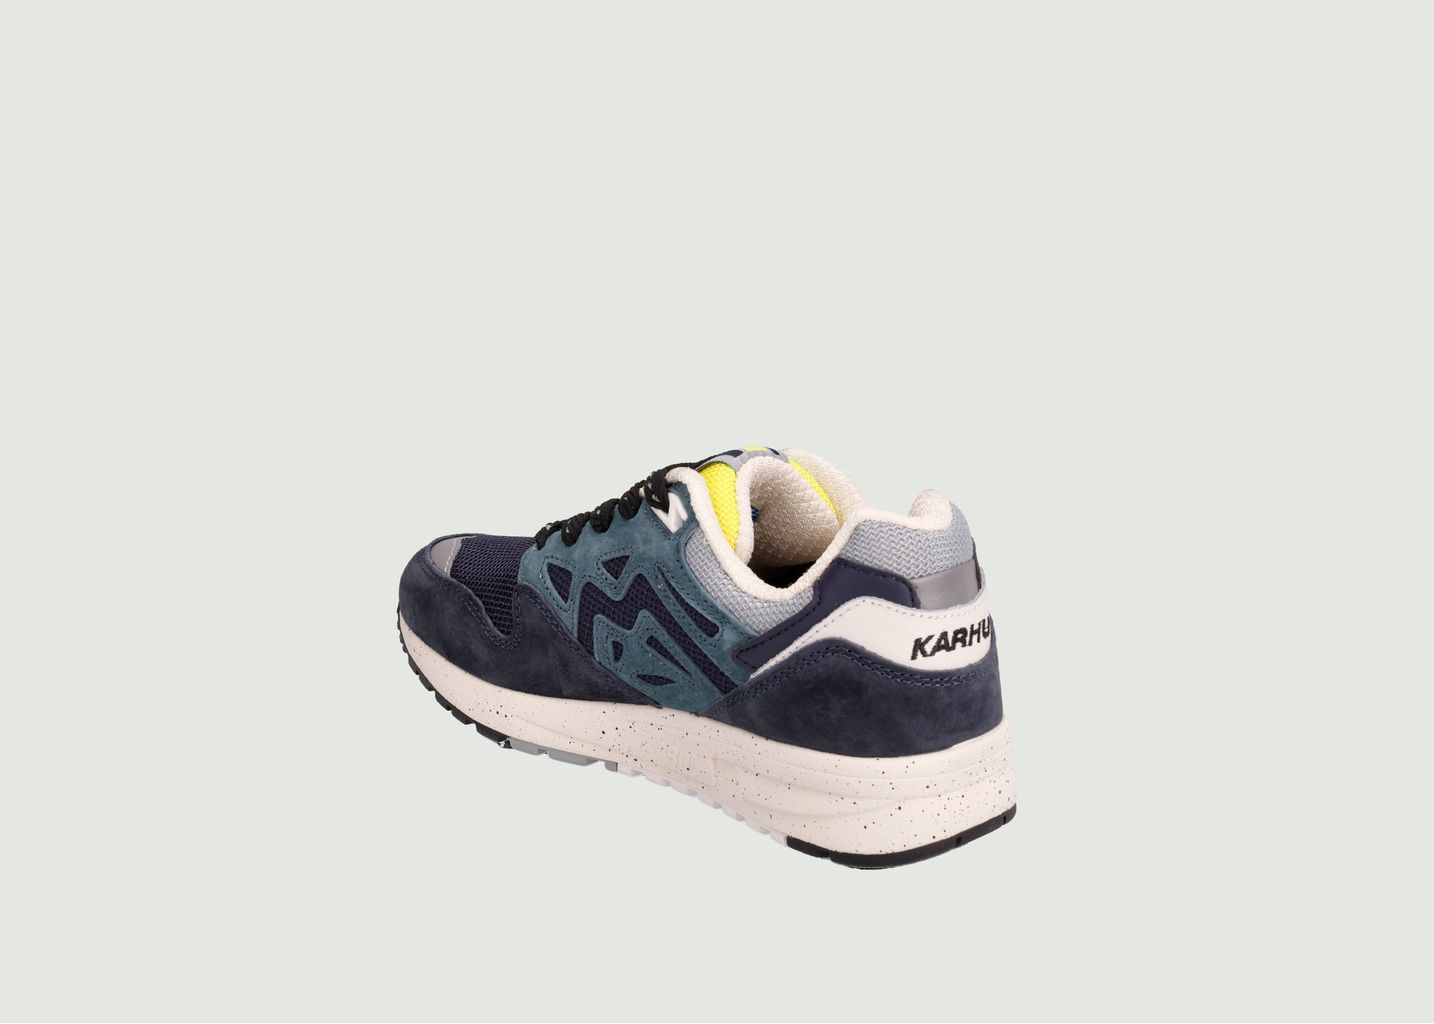 Legacy 96 sneakers - Karhu